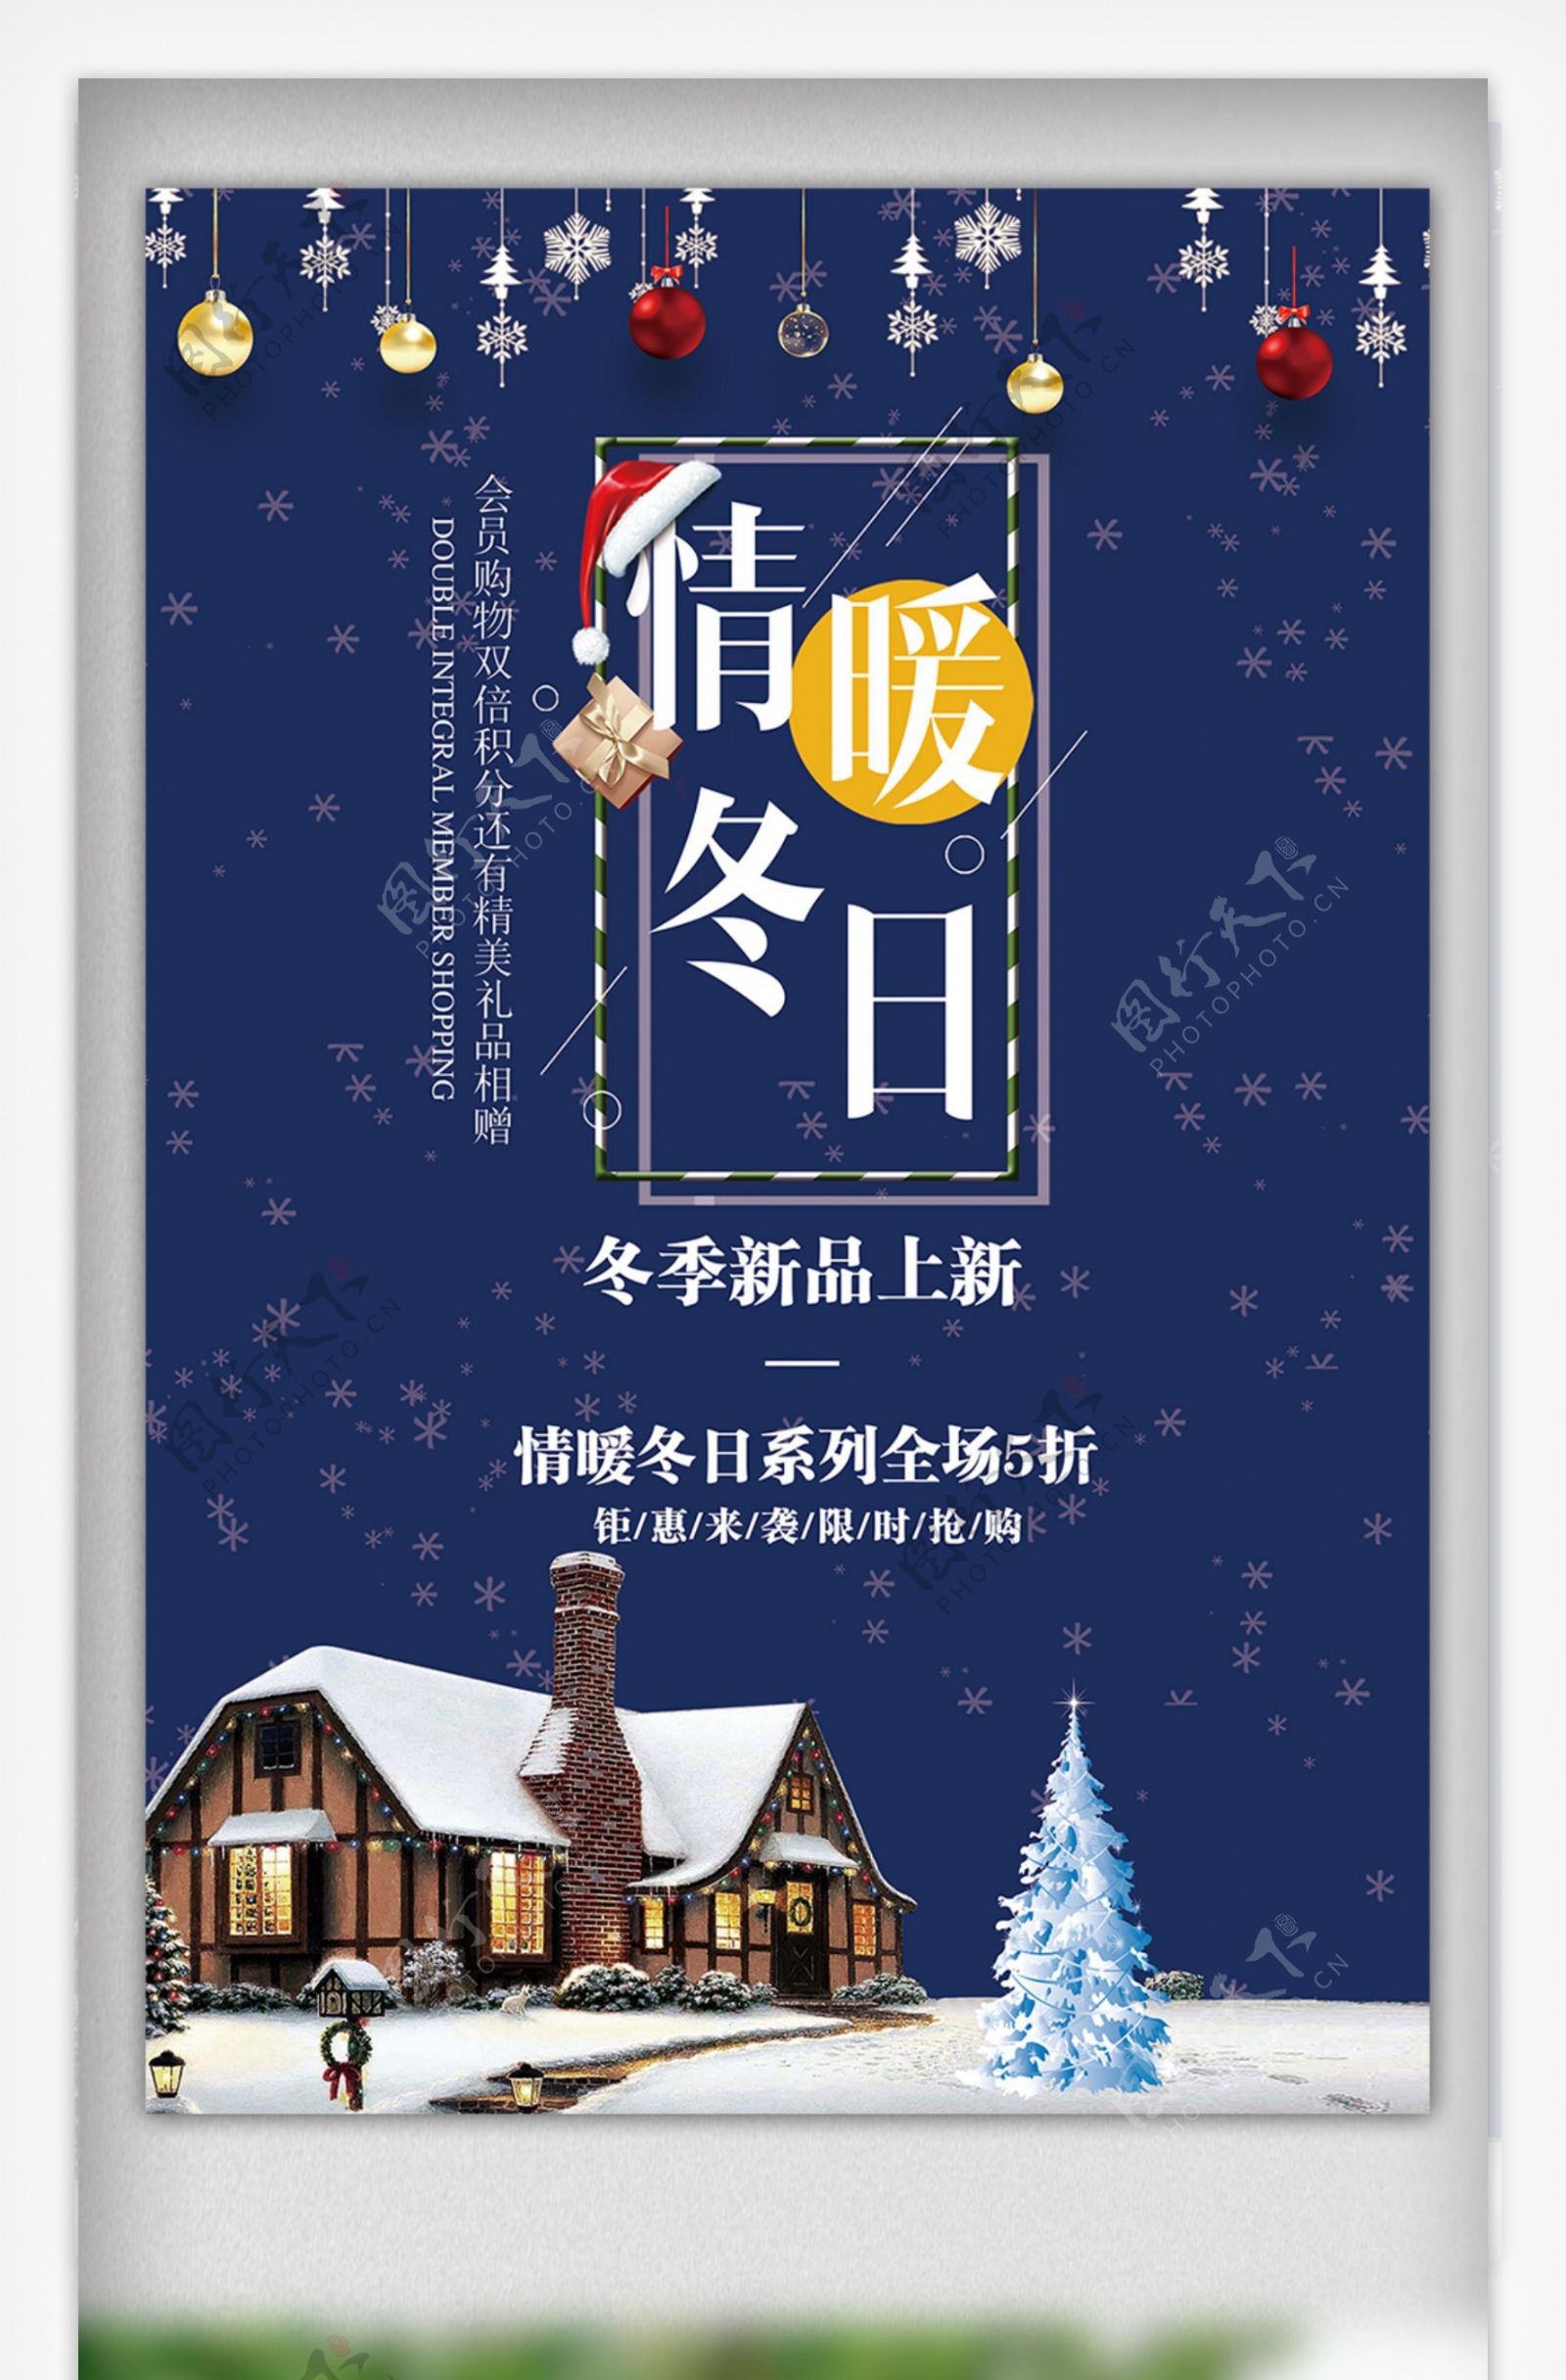 2017梦幻蓝色情暖冬日冬季主题海报设计